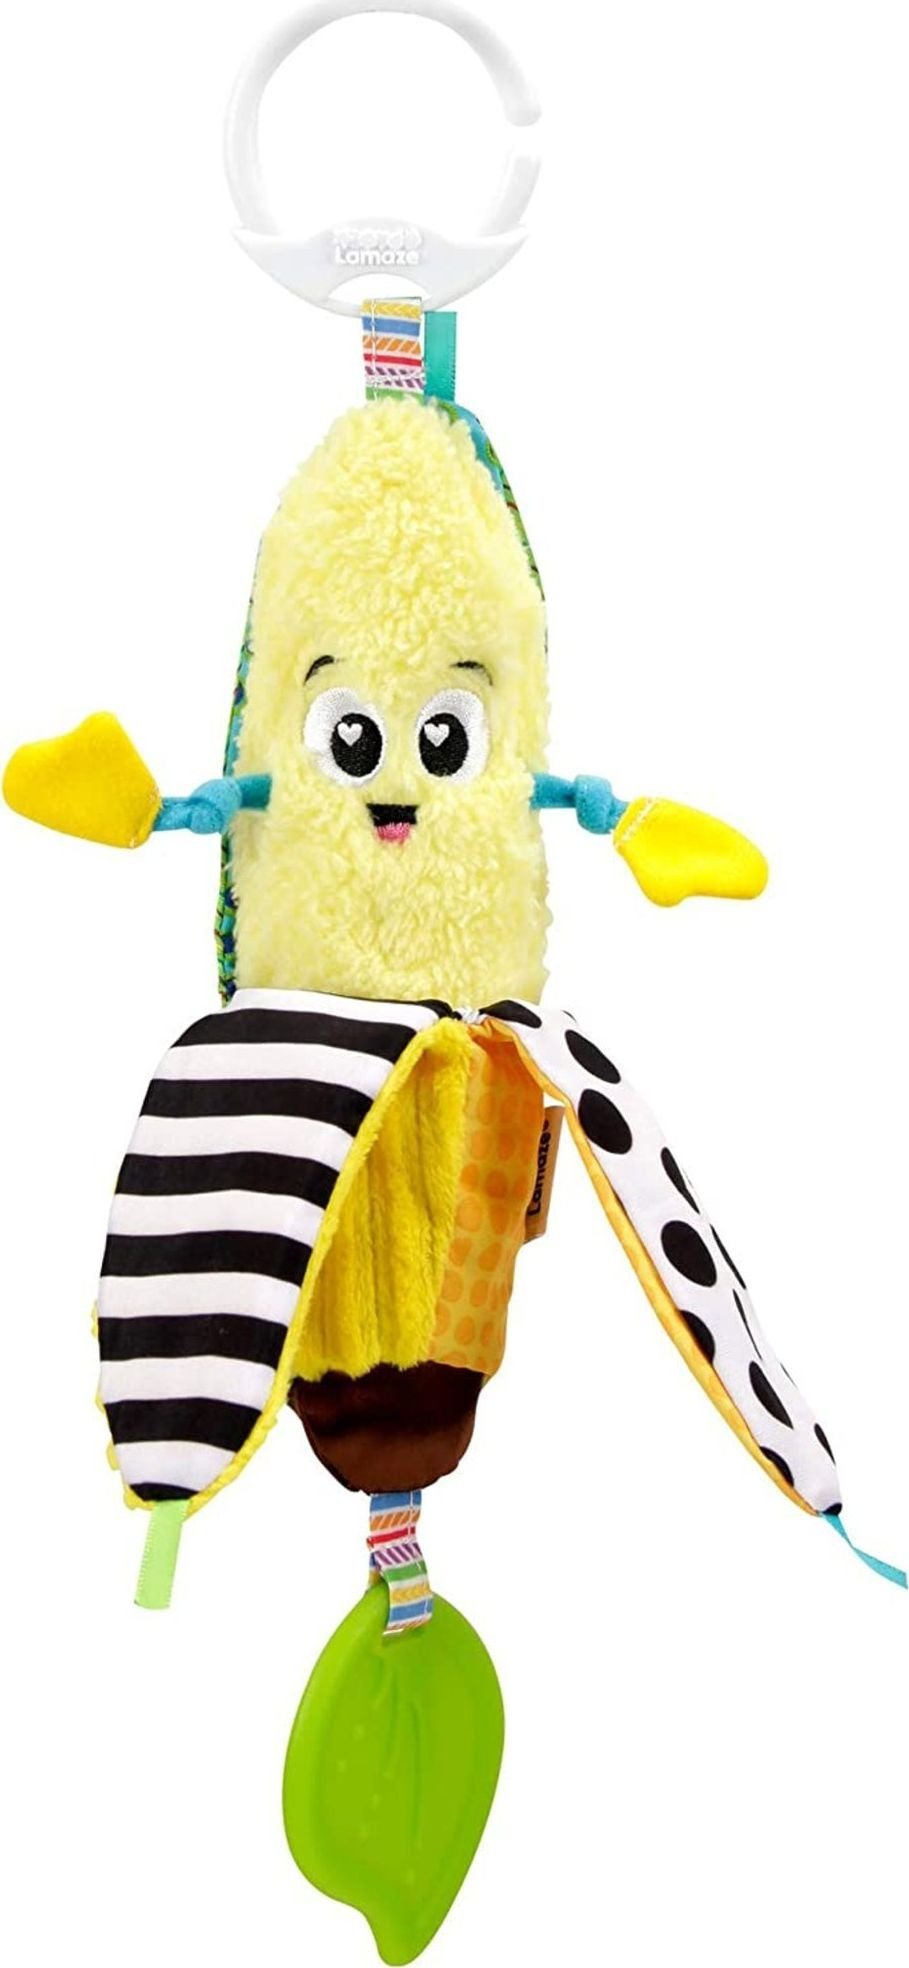 Tomy Tomy Lamaze Mascota Banana Benek cu un dentisor